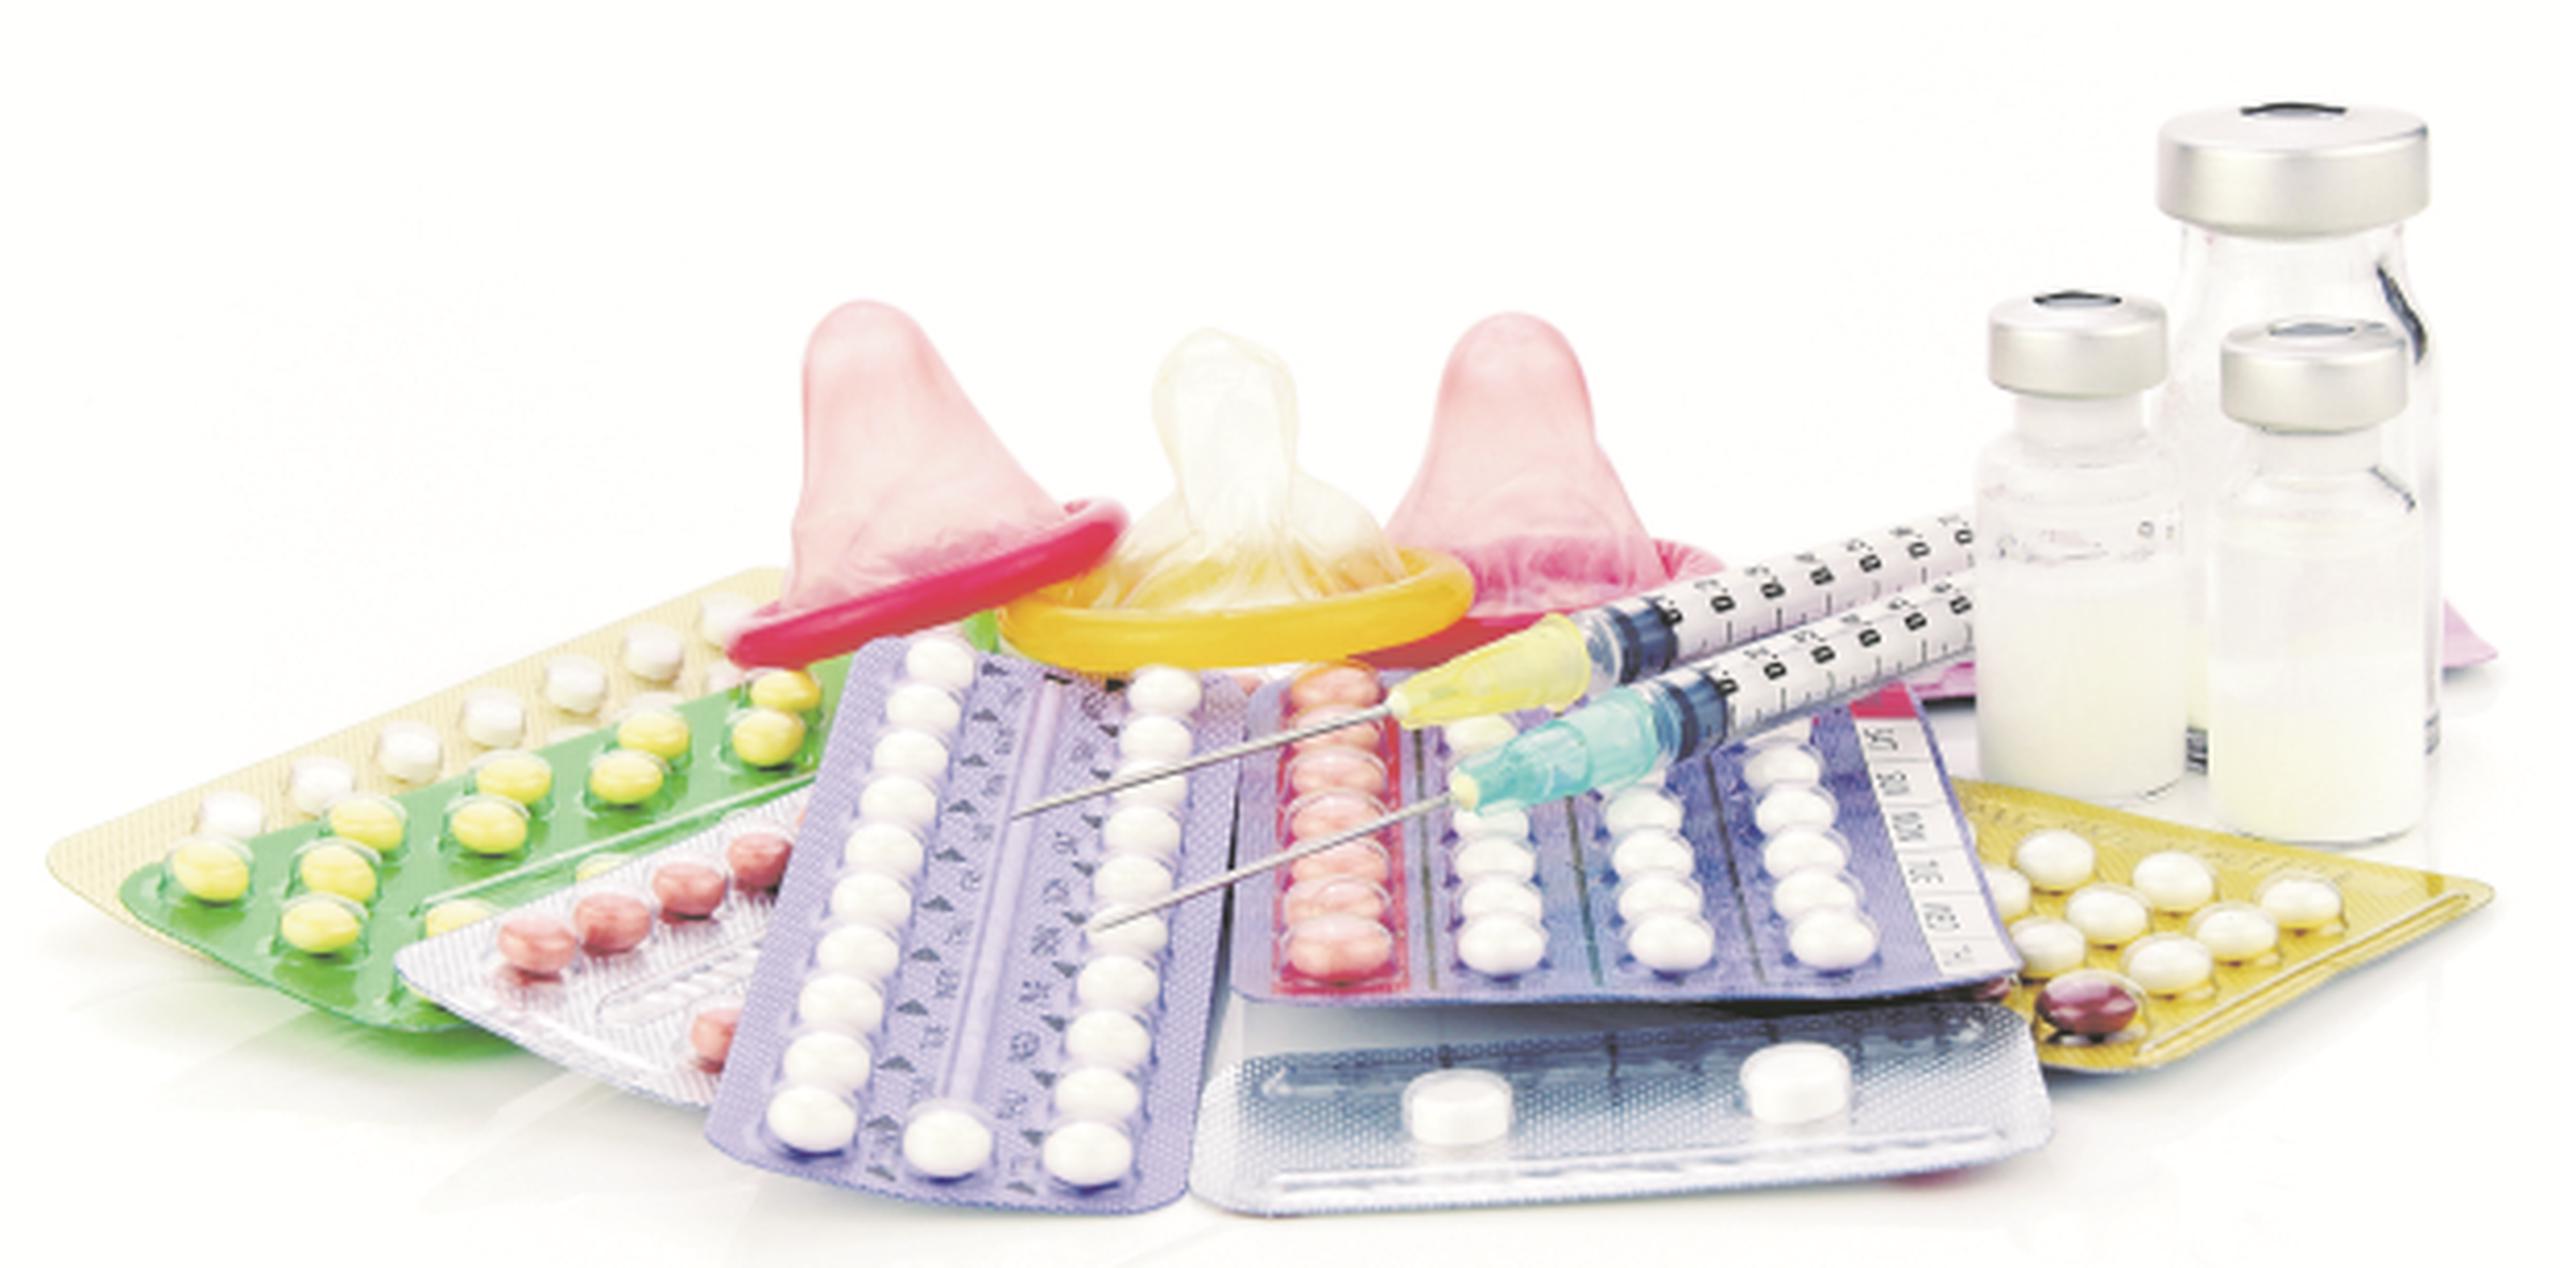 Mujeres pueden contar con toda clase de métodos anticonceptivos de forma gratuita mediante la iniciativa Z-Can. (Suministrada)